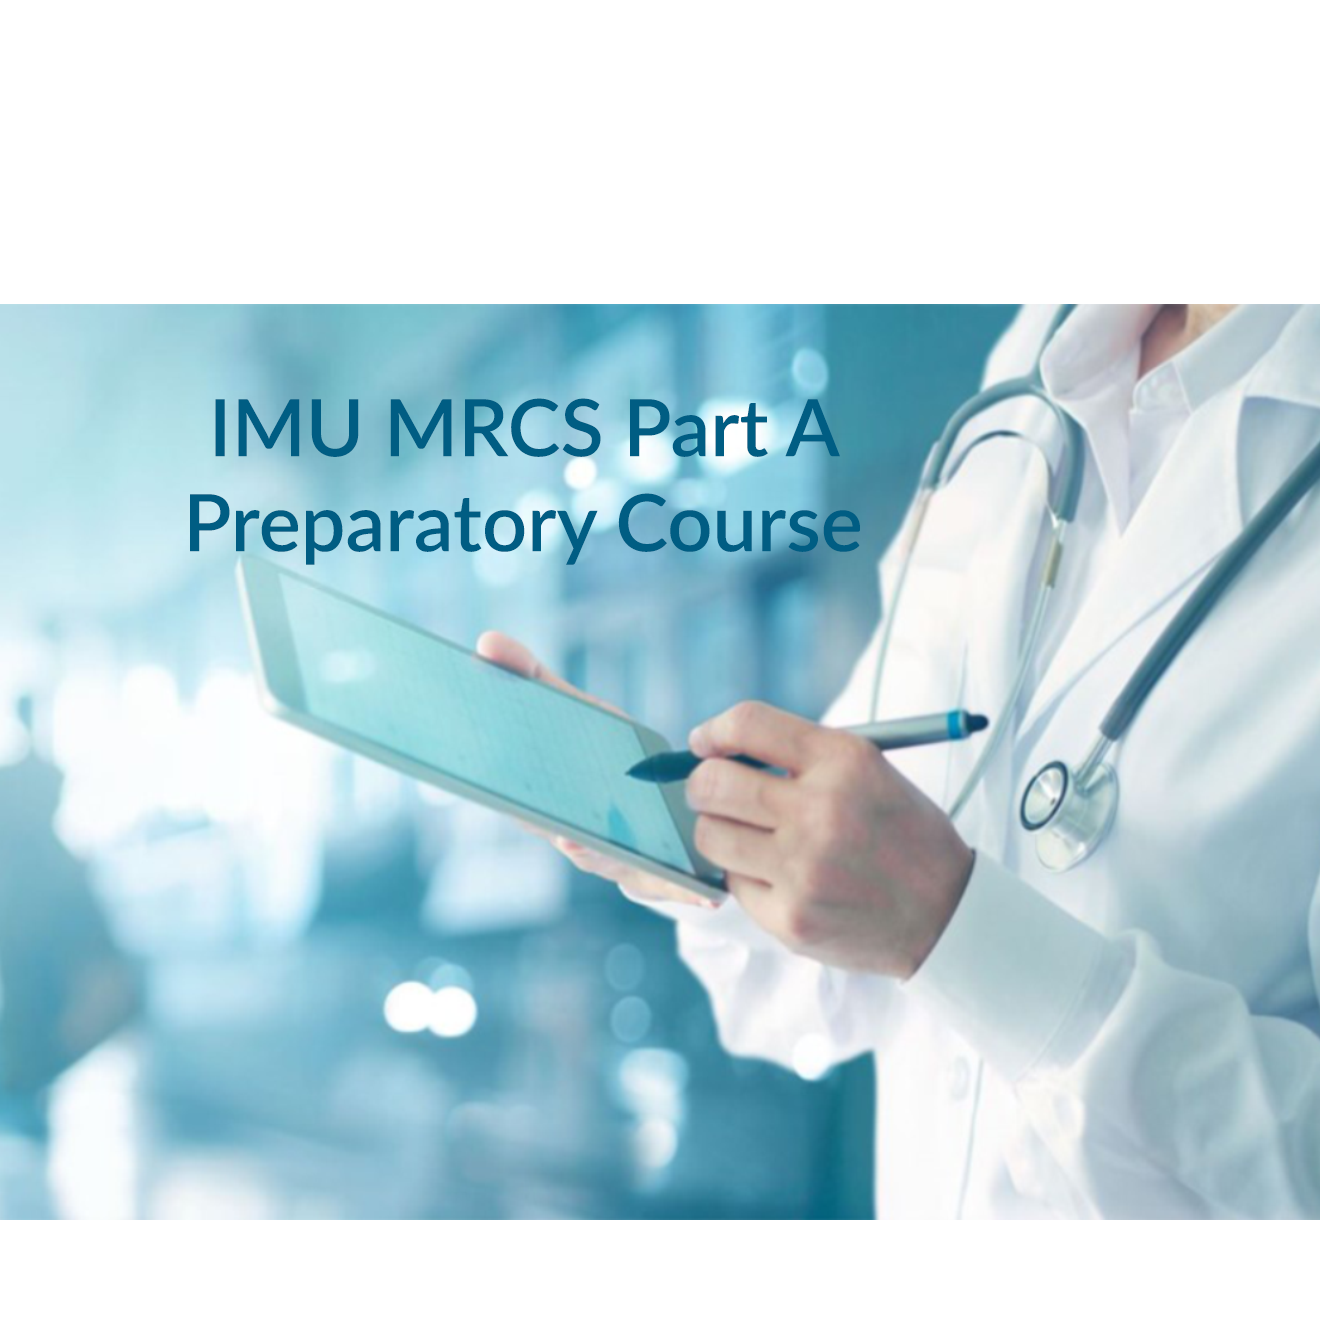 IMU MRCS Part A Preparatory Course